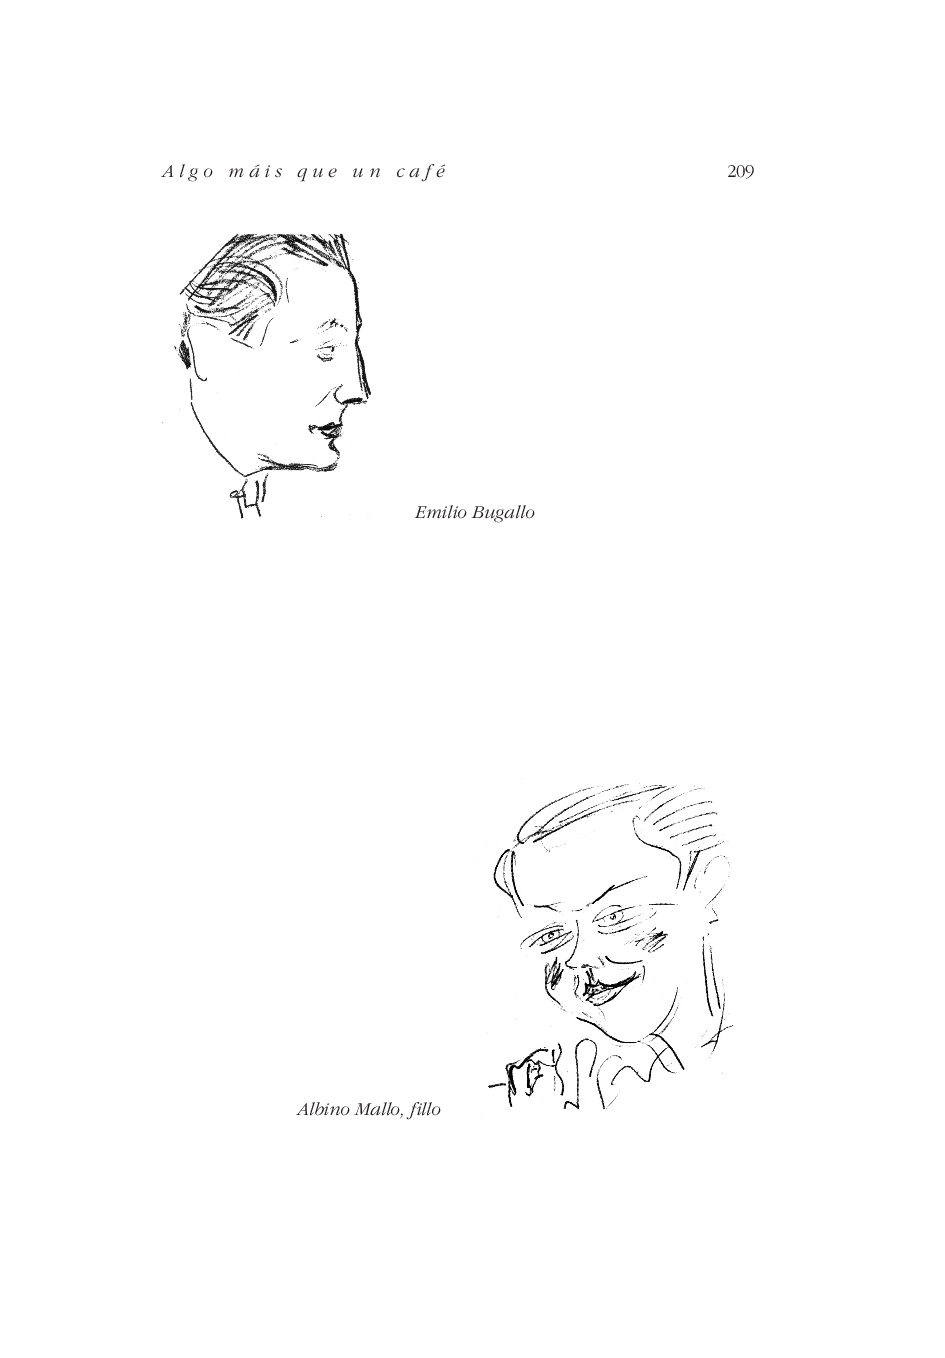 Caricaturas do Café Derby - Emilio Bugallo e Albino Mallo, fillo